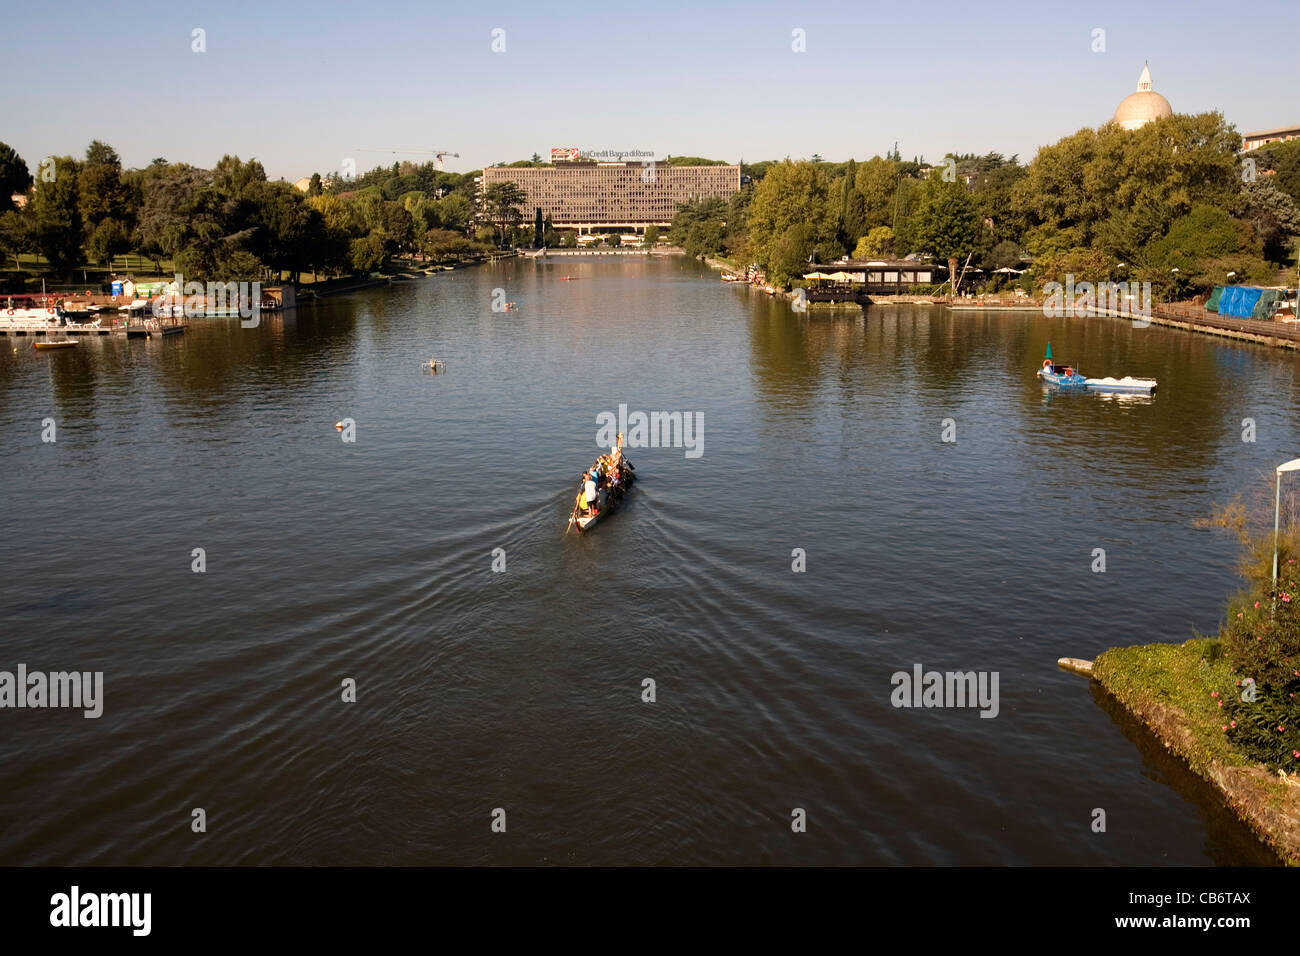 La gente canoa en el lago artificial del parque surraunding distrito Eur Roma Italia Foto de stock